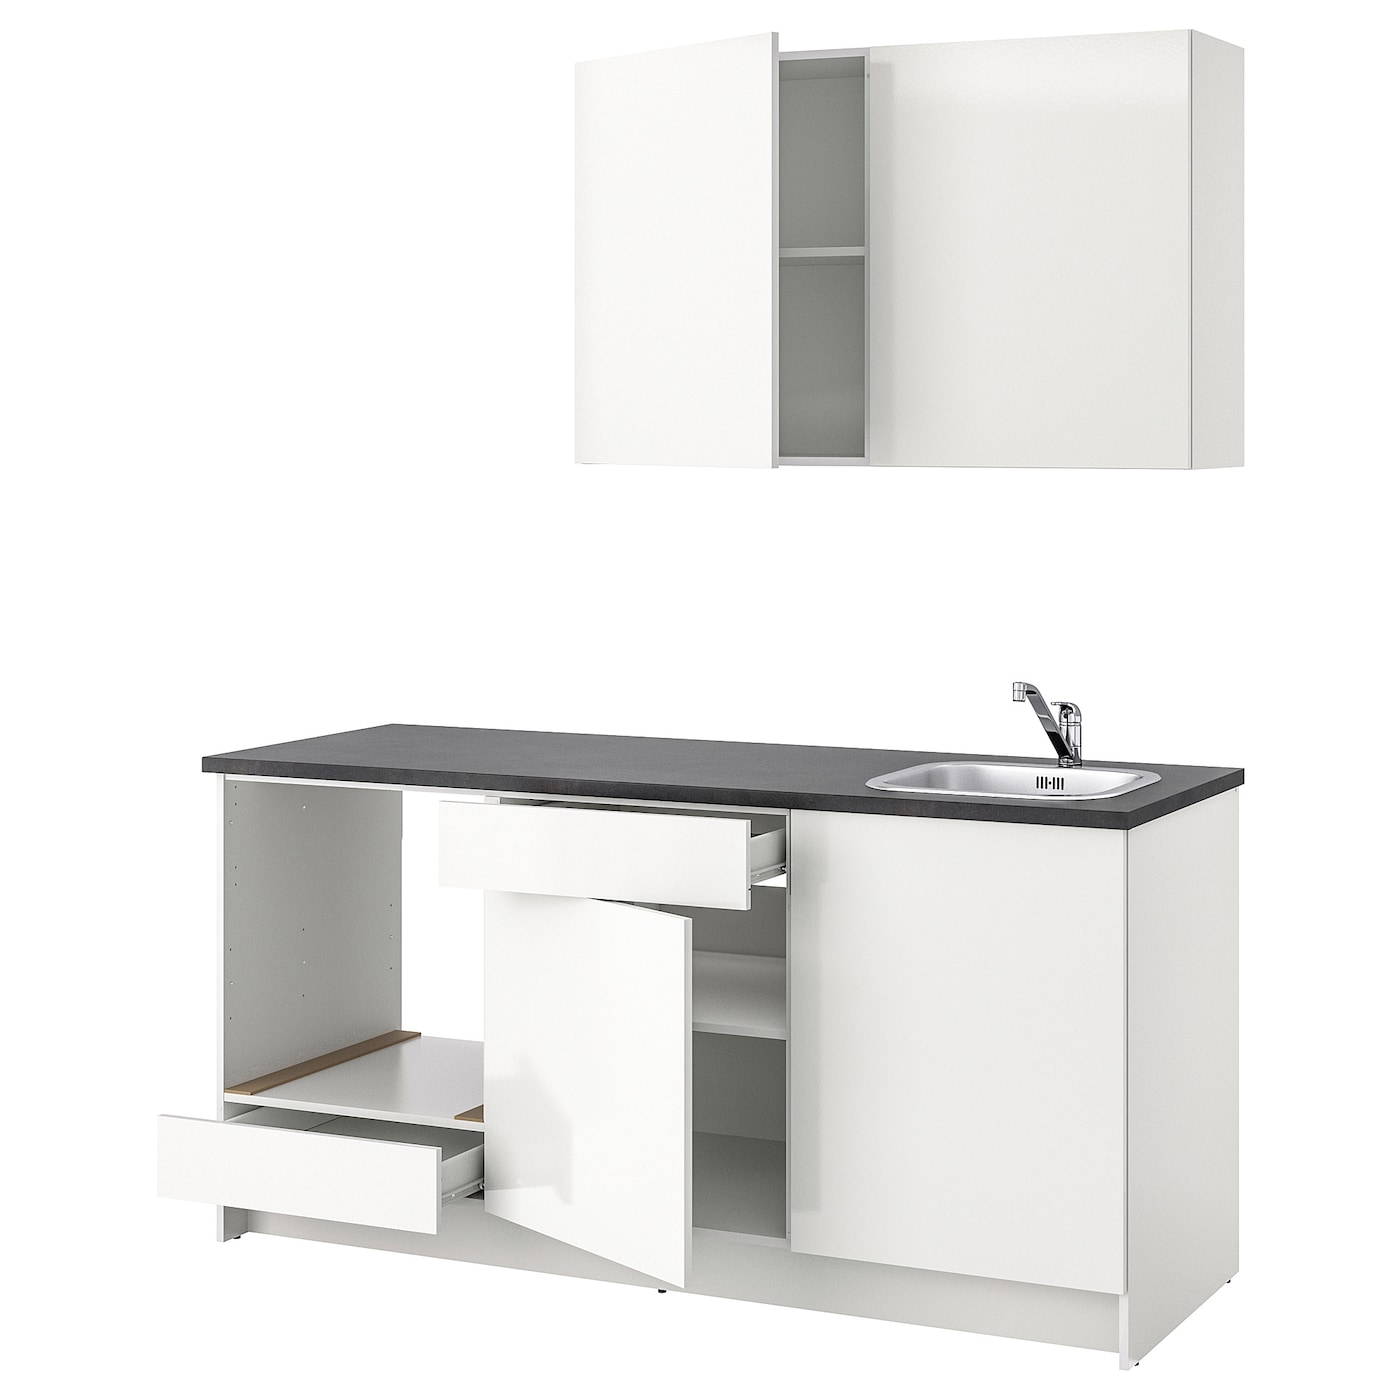 Кухонная комбинация для хранения - KNOXHULT IKEA/ КНОКСХУЛЬТ ИКЕА, 180x61x220 см, белый/серый